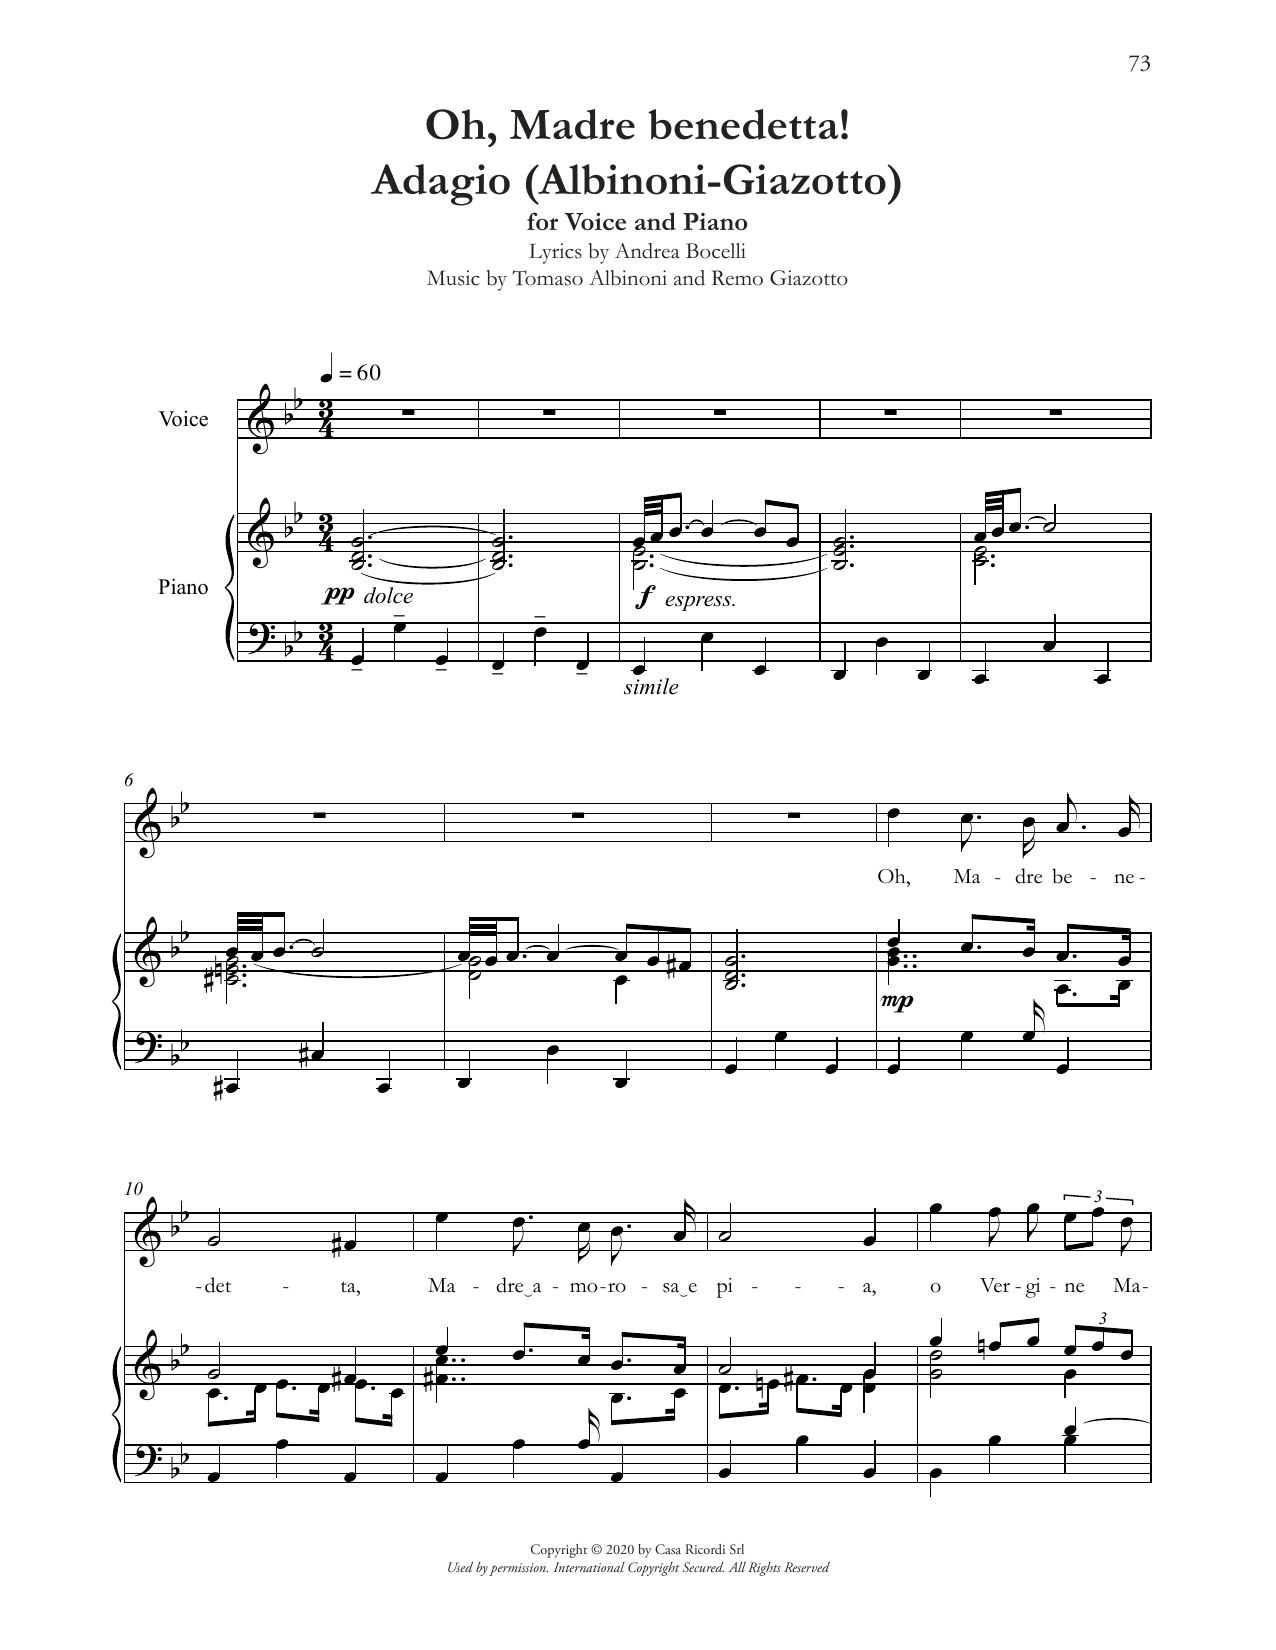 Download Andrea Bocelli Oh, Madre Benedetta! (Adagio Di Albinoni) Sheet Music and learn how to play Piano & Vocal PDF digital score in minutes